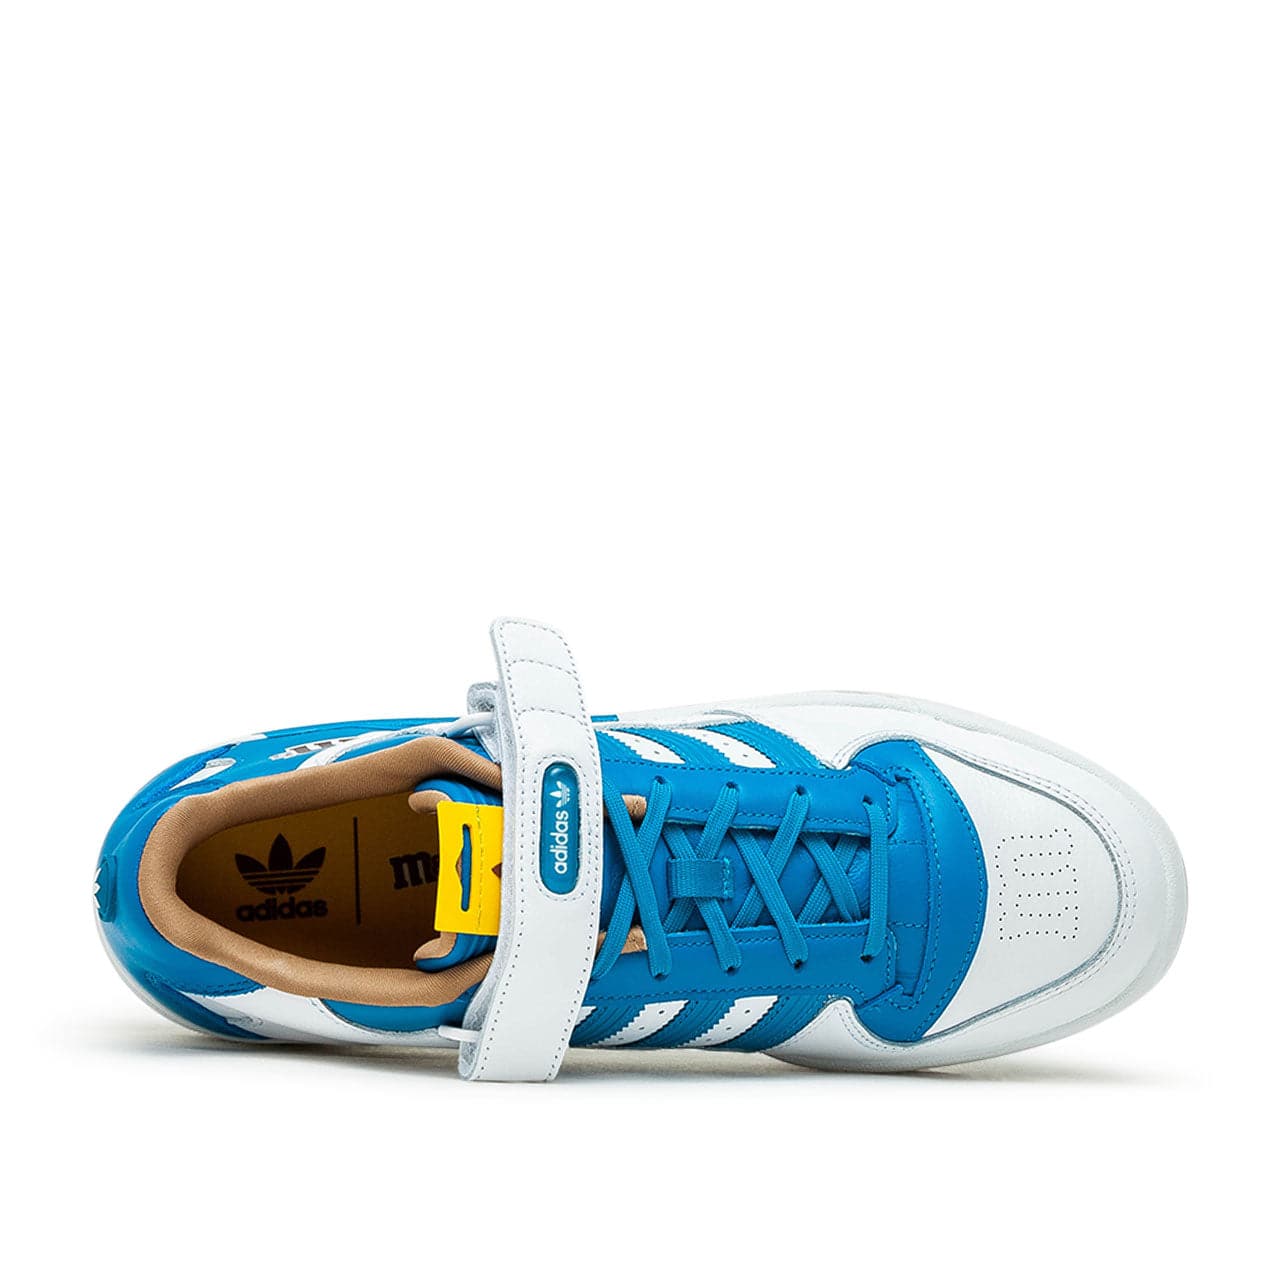 adidas x M&M's Forum Low 84 (Blau / Weiß)  - Allike Store